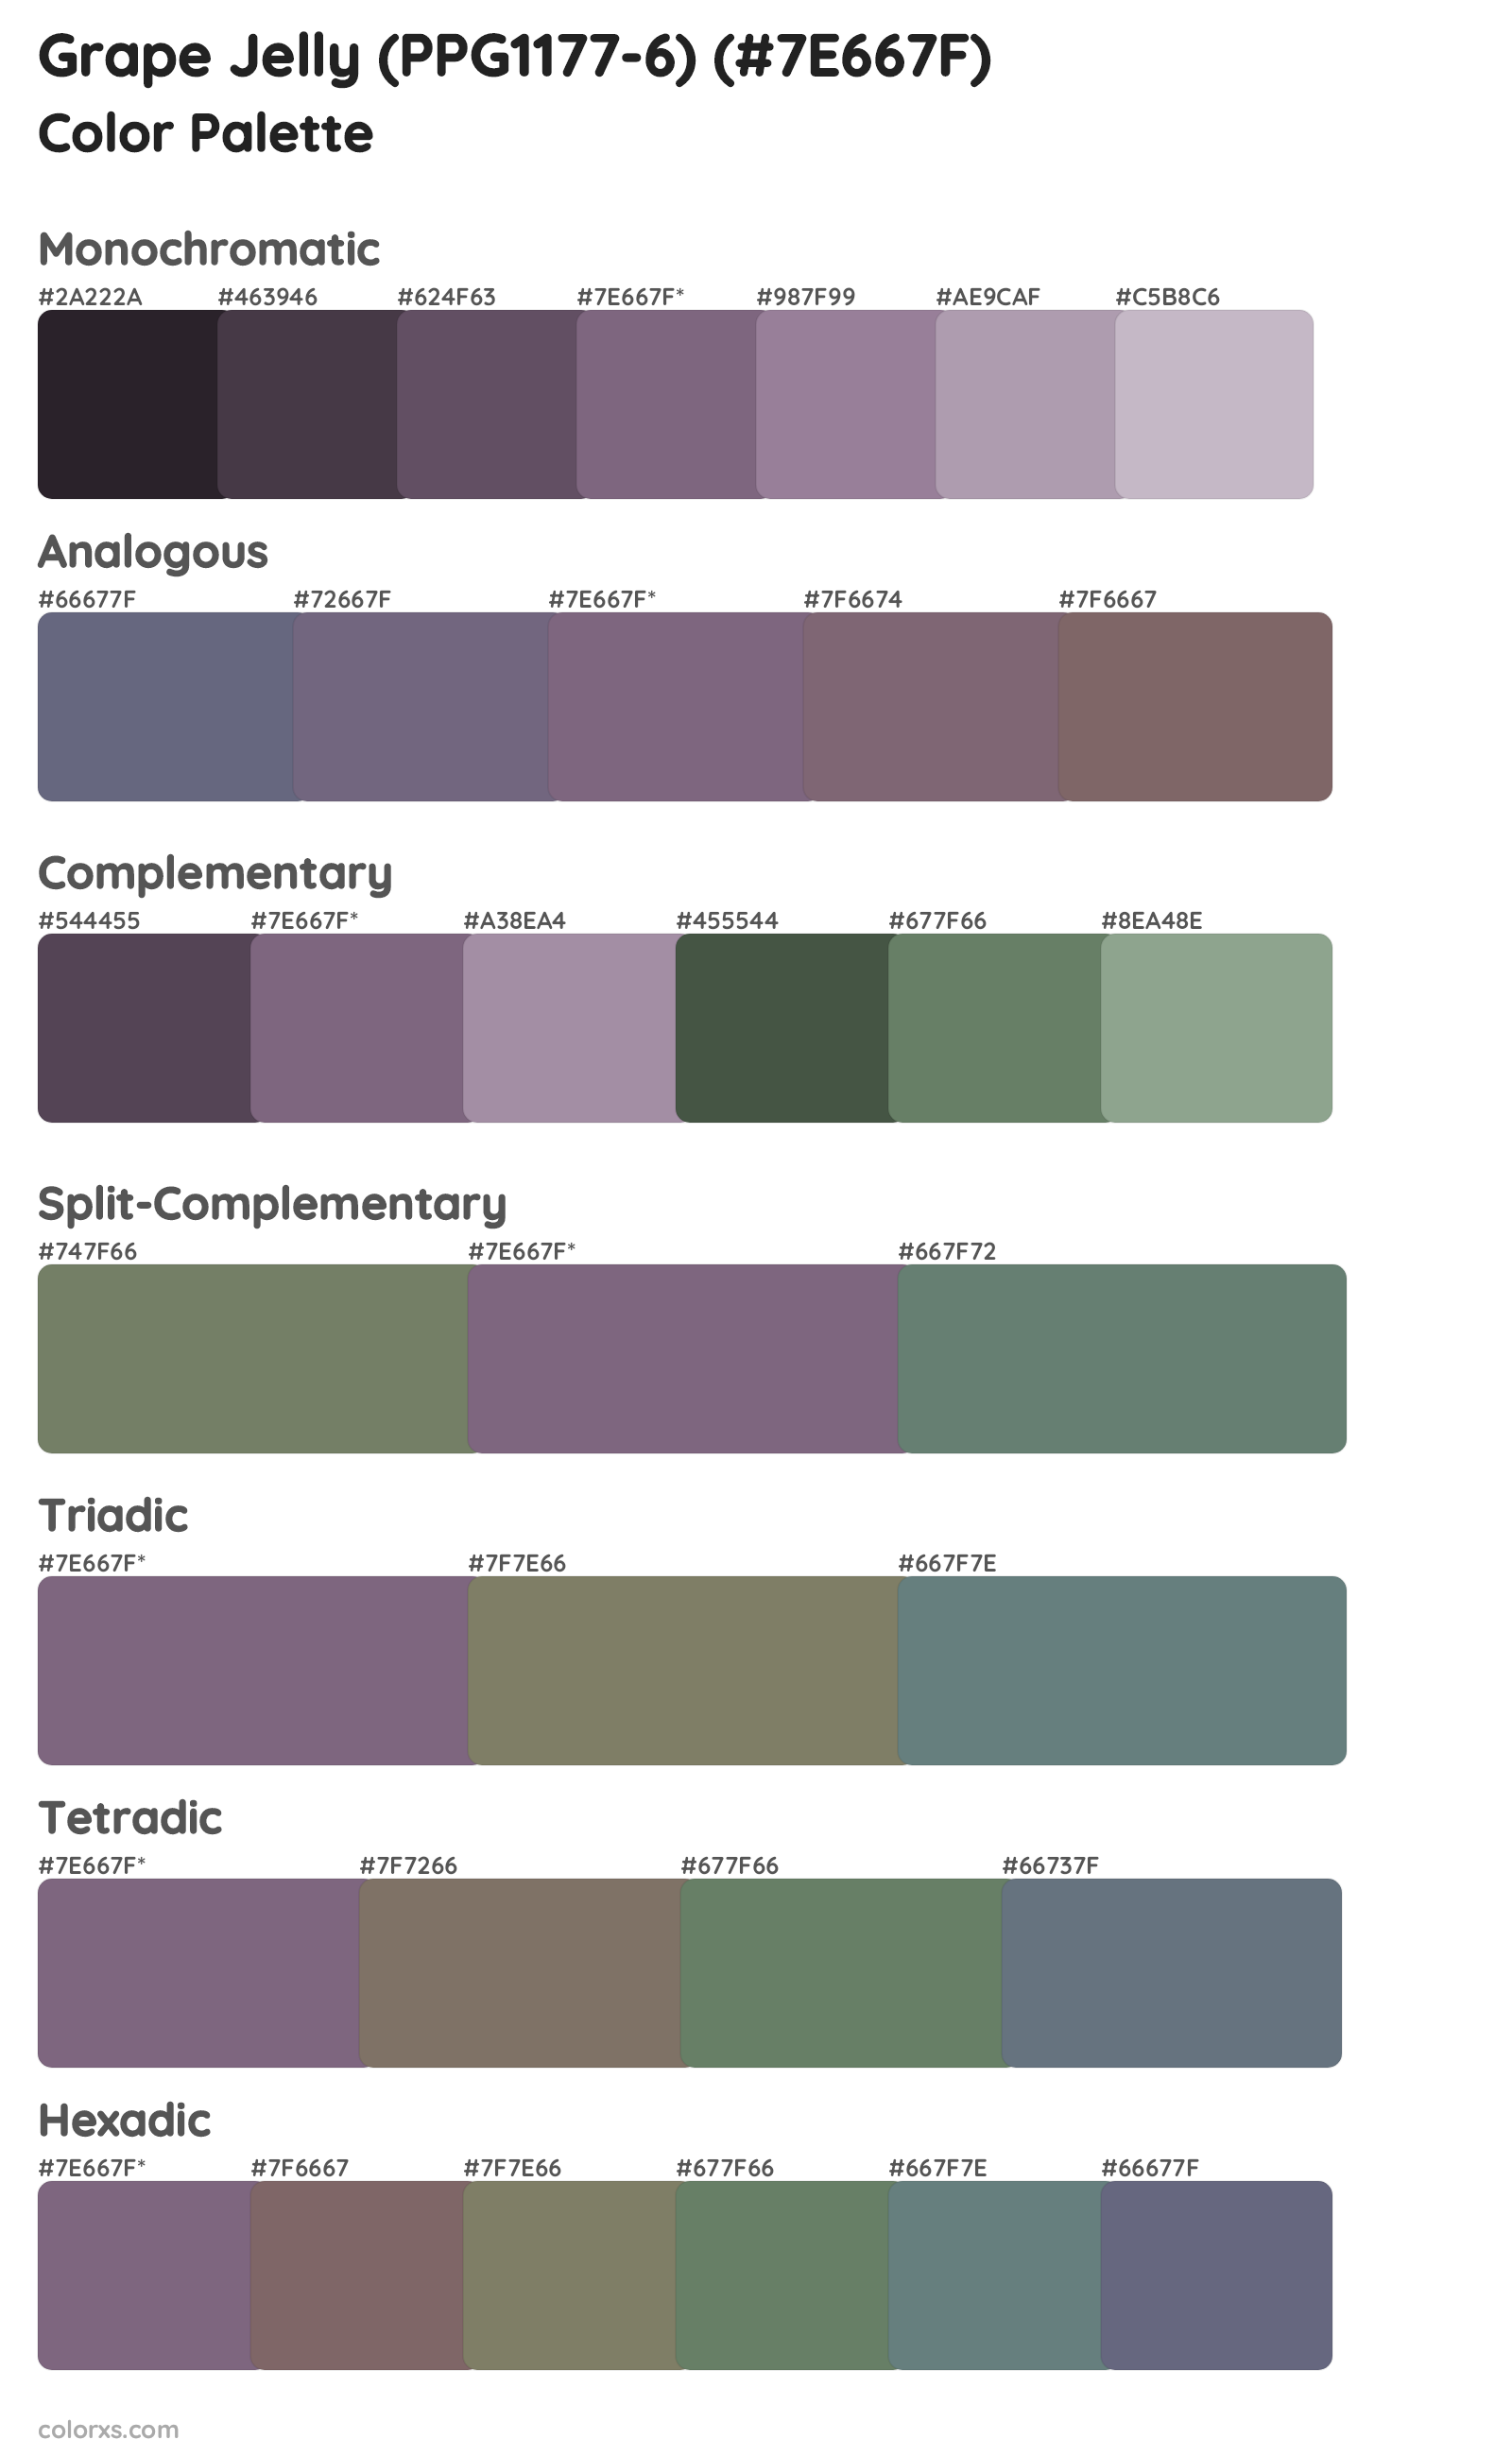 Grape Jelly (PPG1177-6) Color Scheme Palettes